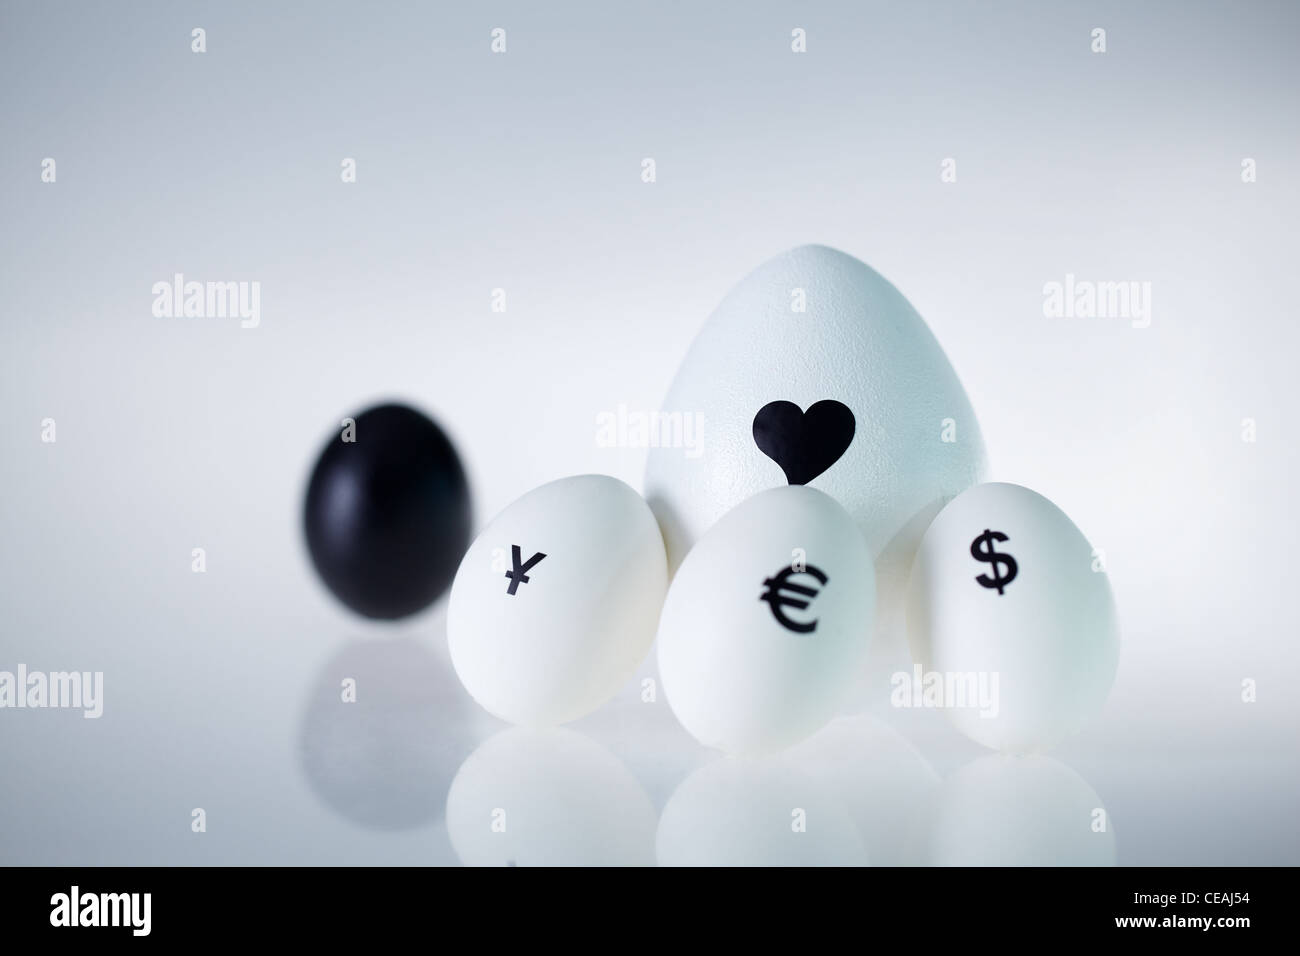 Imagen del gran huevo blanco con corazón rodeado por tres pequeños huevos con signos de moneda Foto de stock